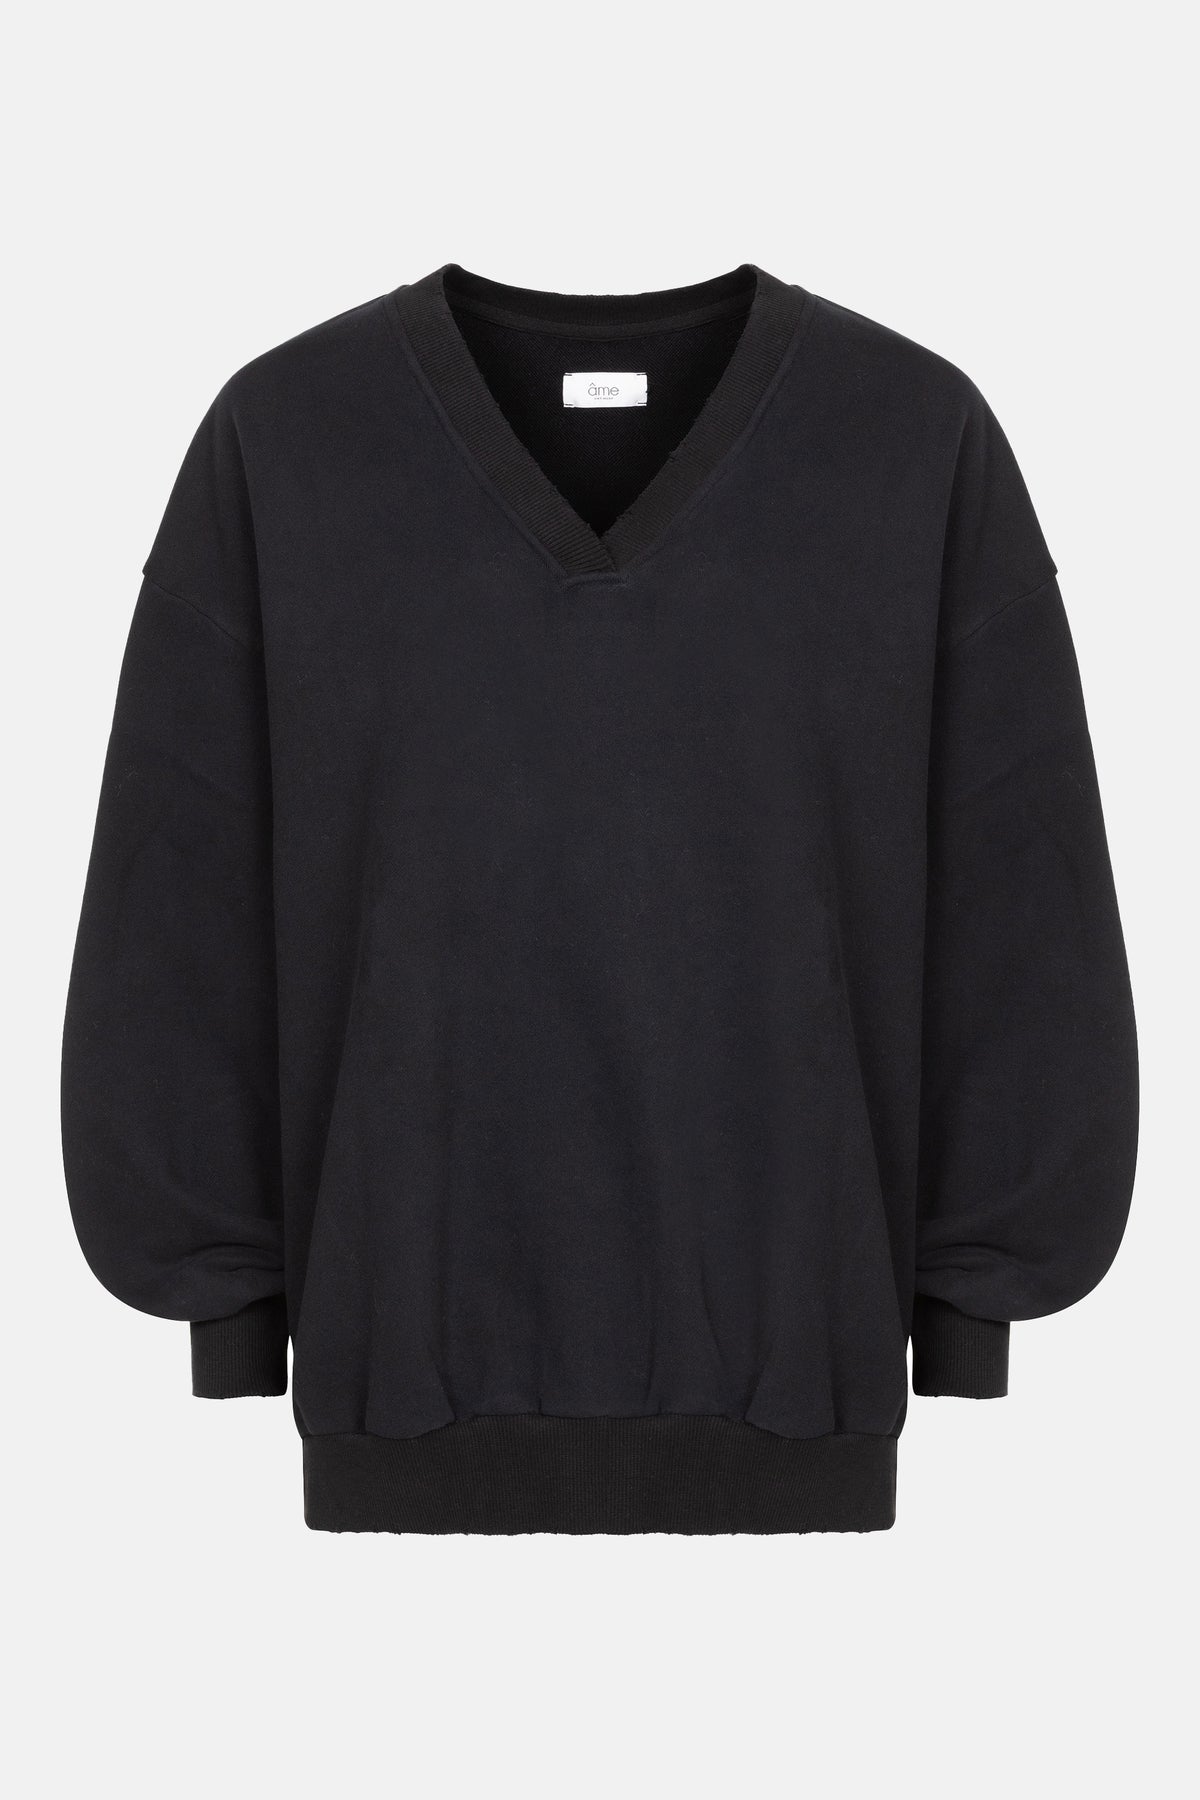 intime Oversized Sweatshirt with V-neck | Black